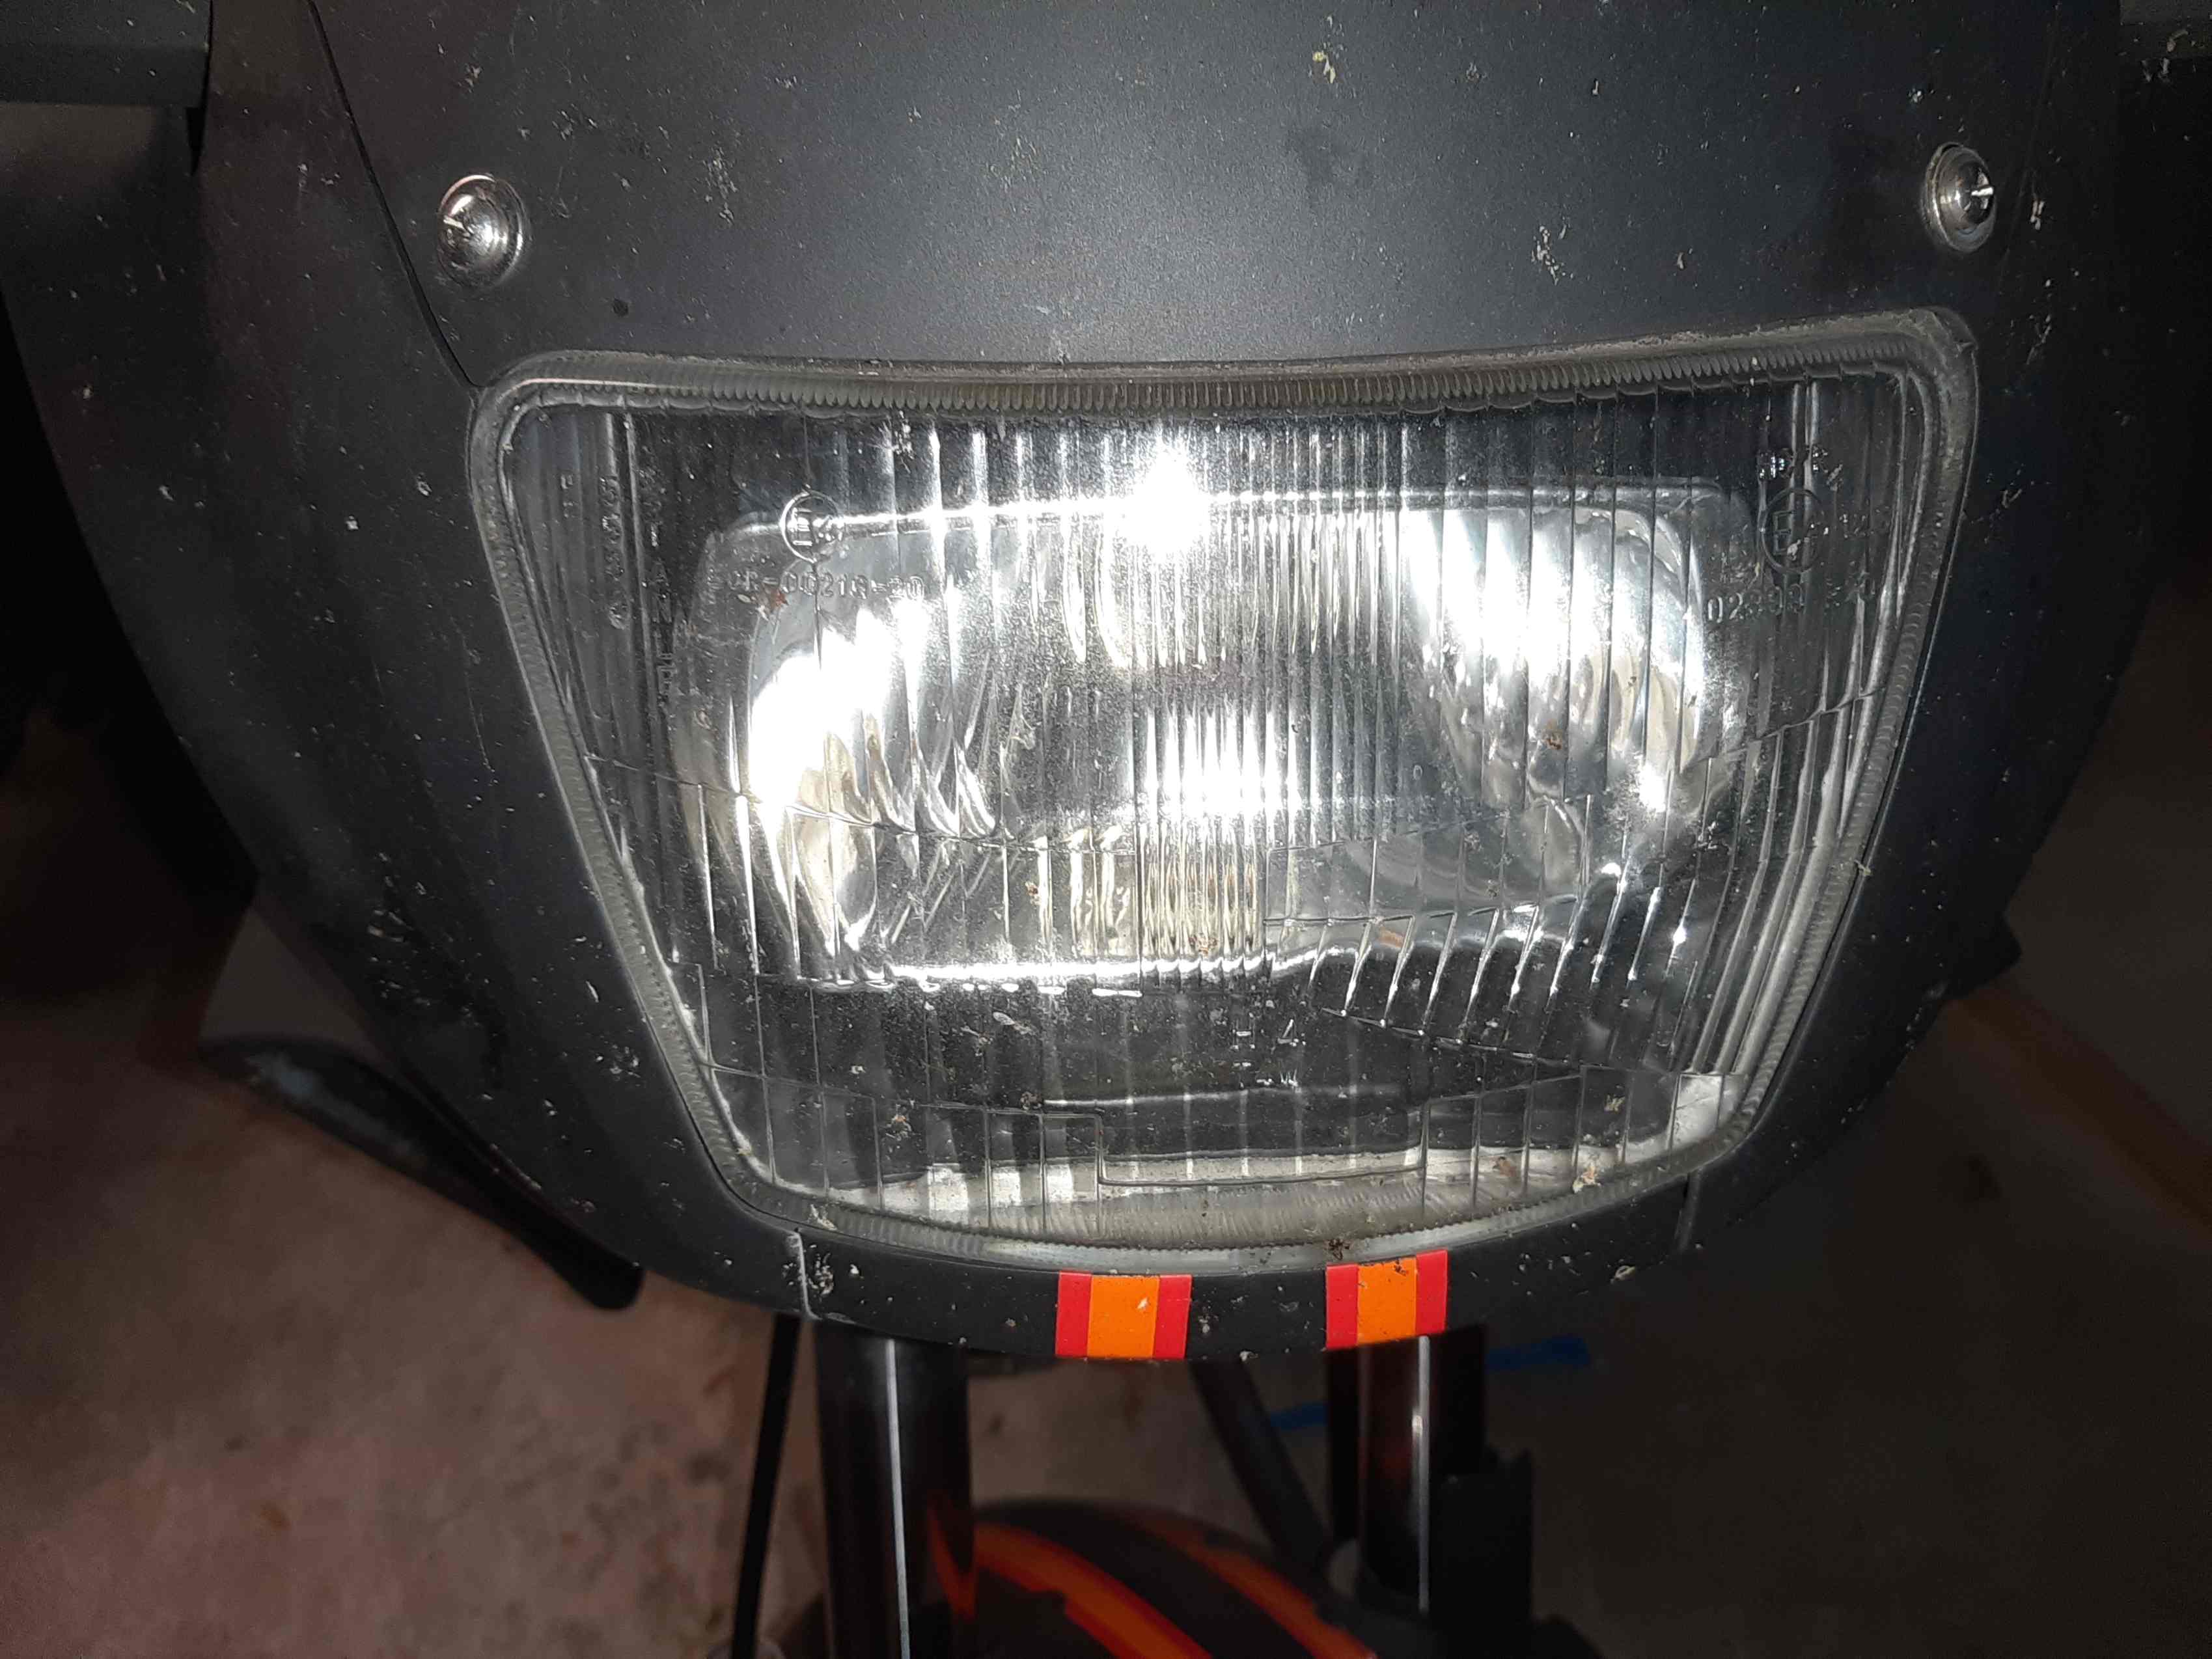 Motorradscheinwerfer mit LED nachrüsten - Motorrad-Tour-Online